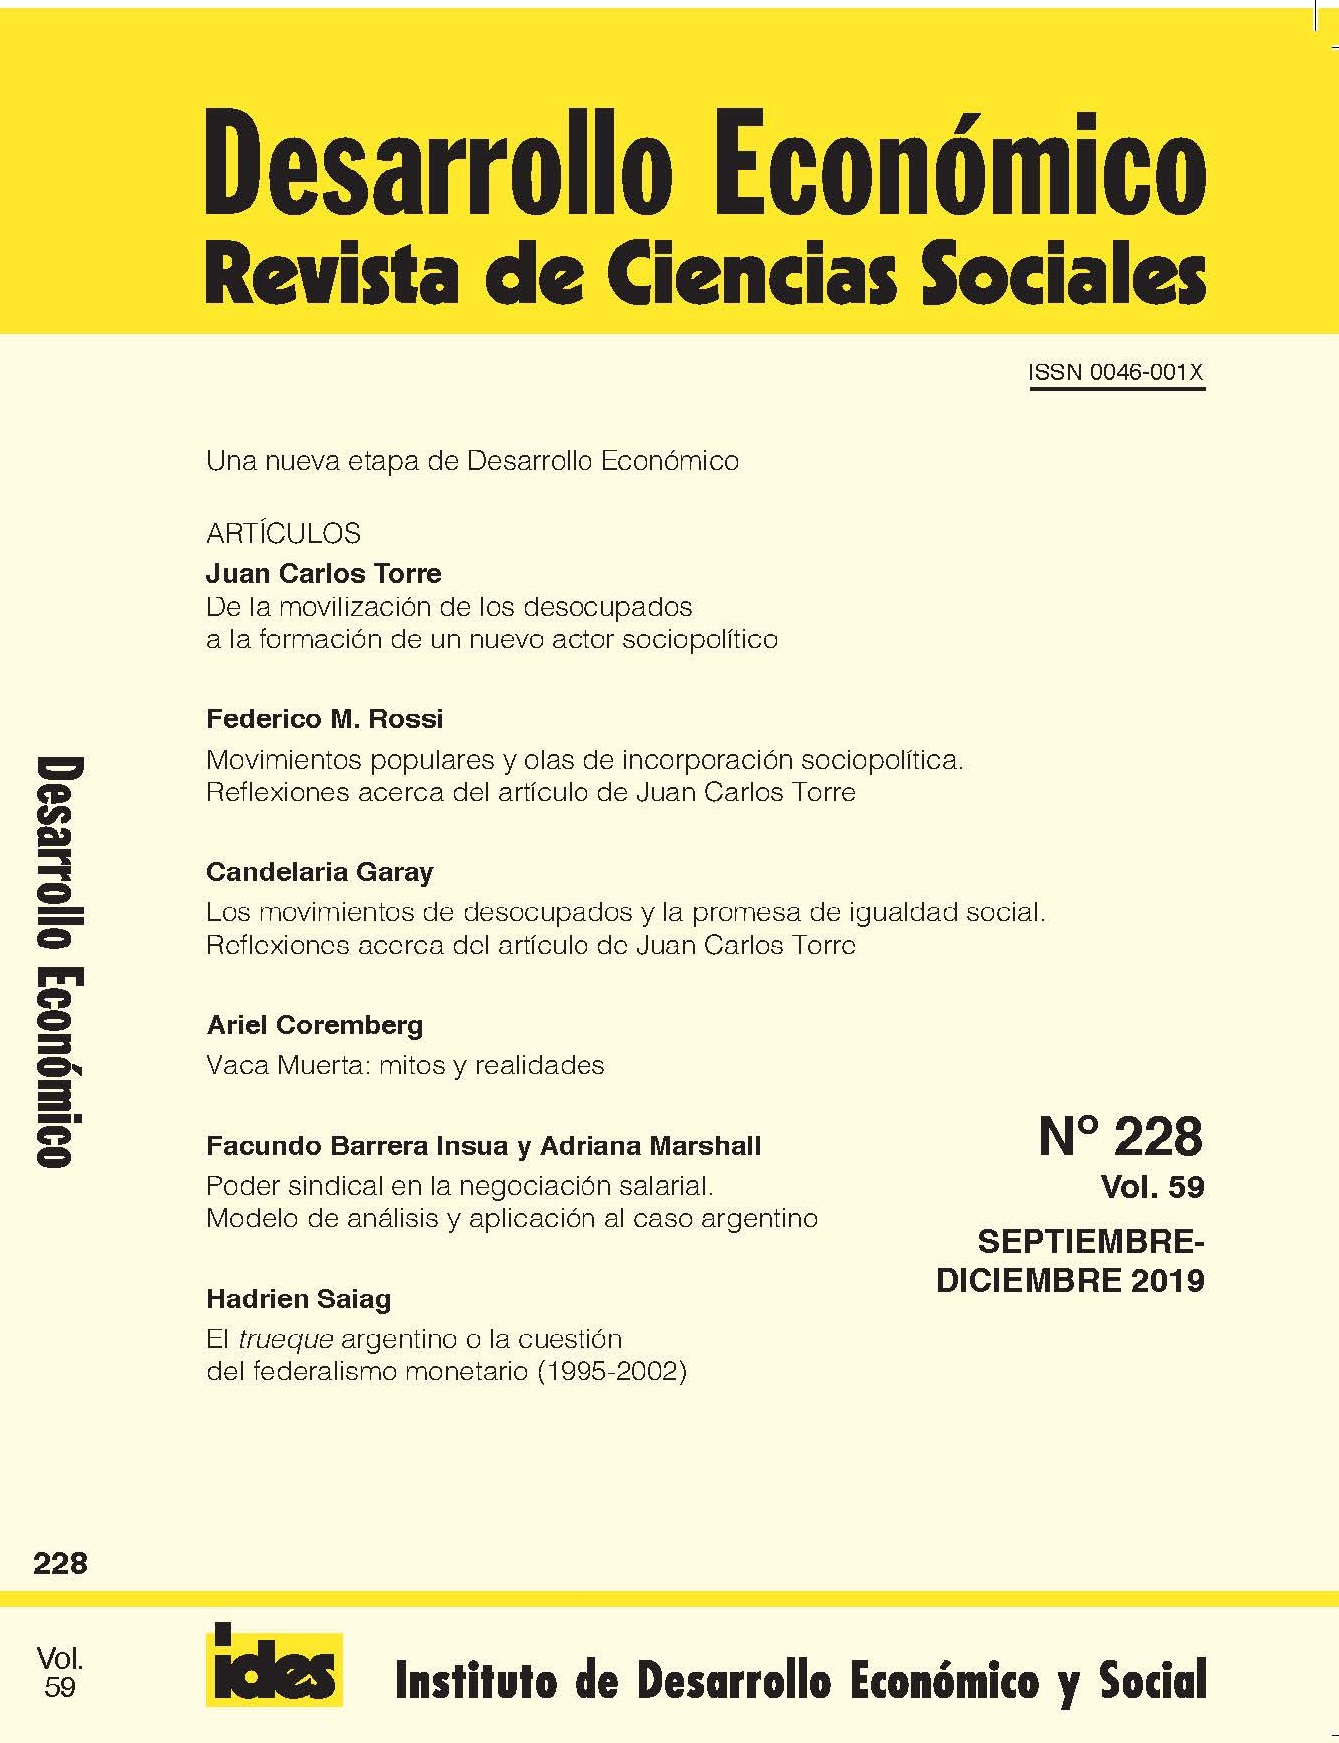 Vol. 59 Núm. 228 (2019) | Desarrollo Económico. Revista de Ciencias Sociales